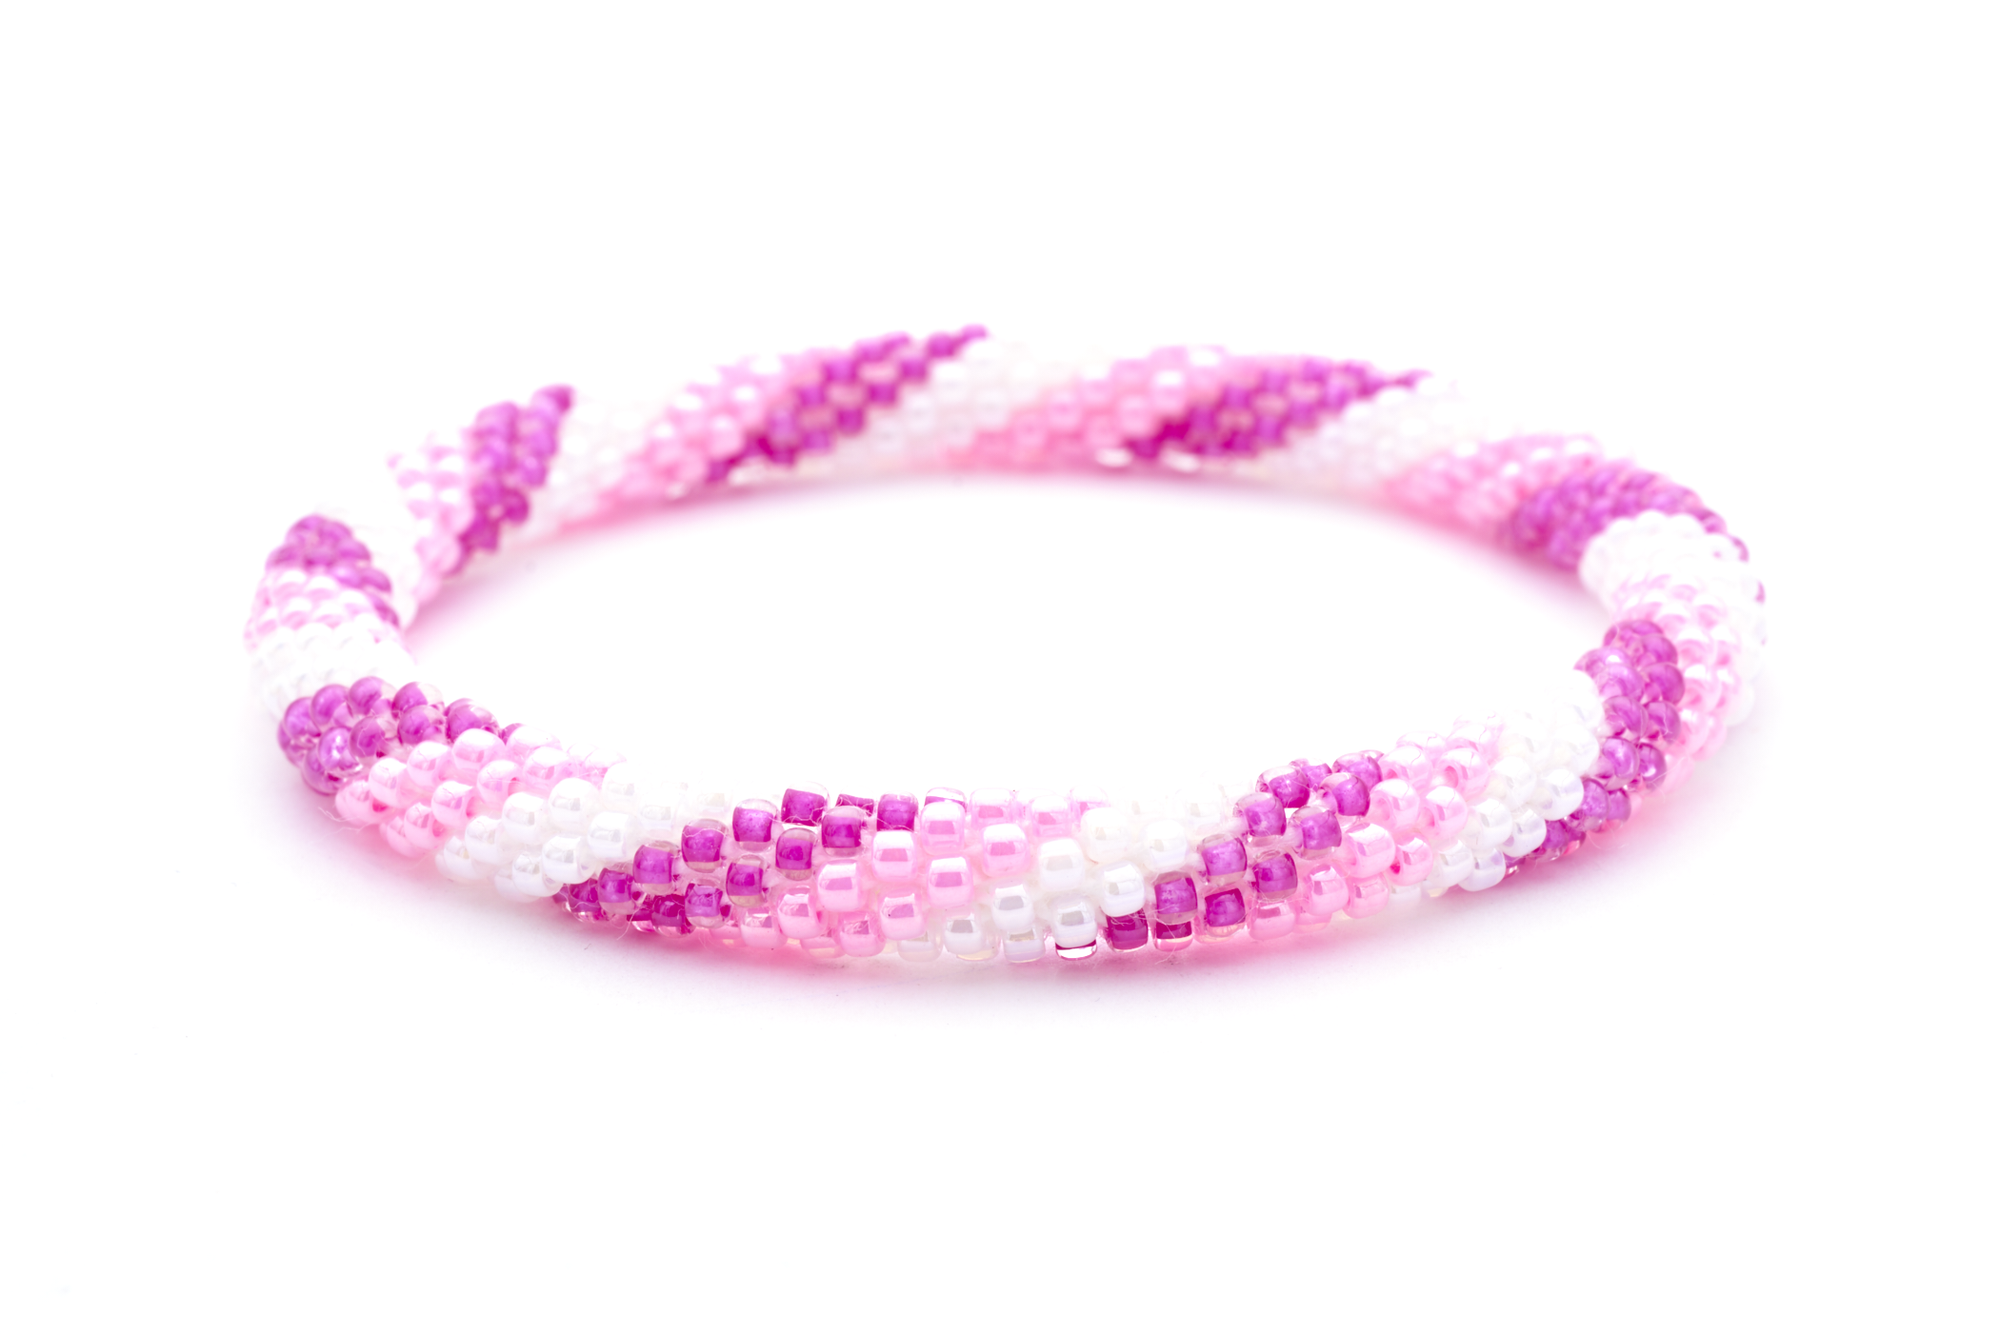 Sashka Co. Extended 8" Bracelet Pink / White Sweetness Bracelet - Extended 8"